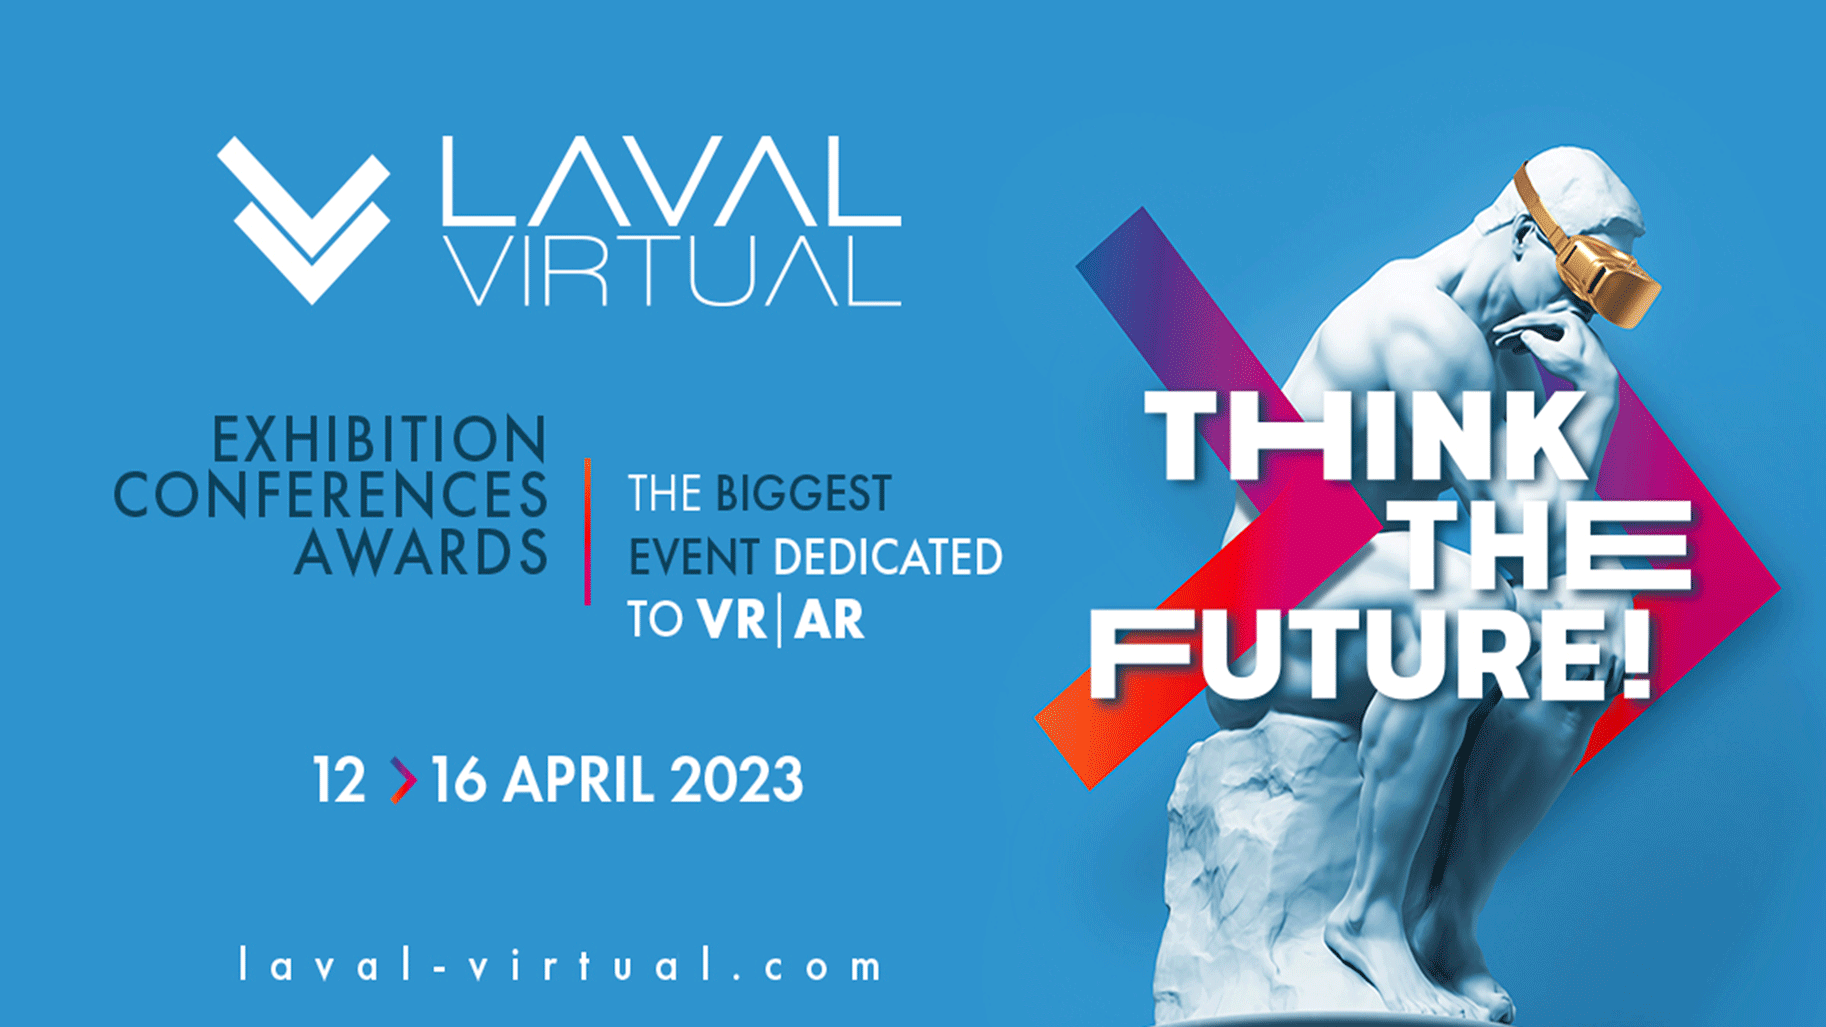 Visuel Laval Virtual 2023